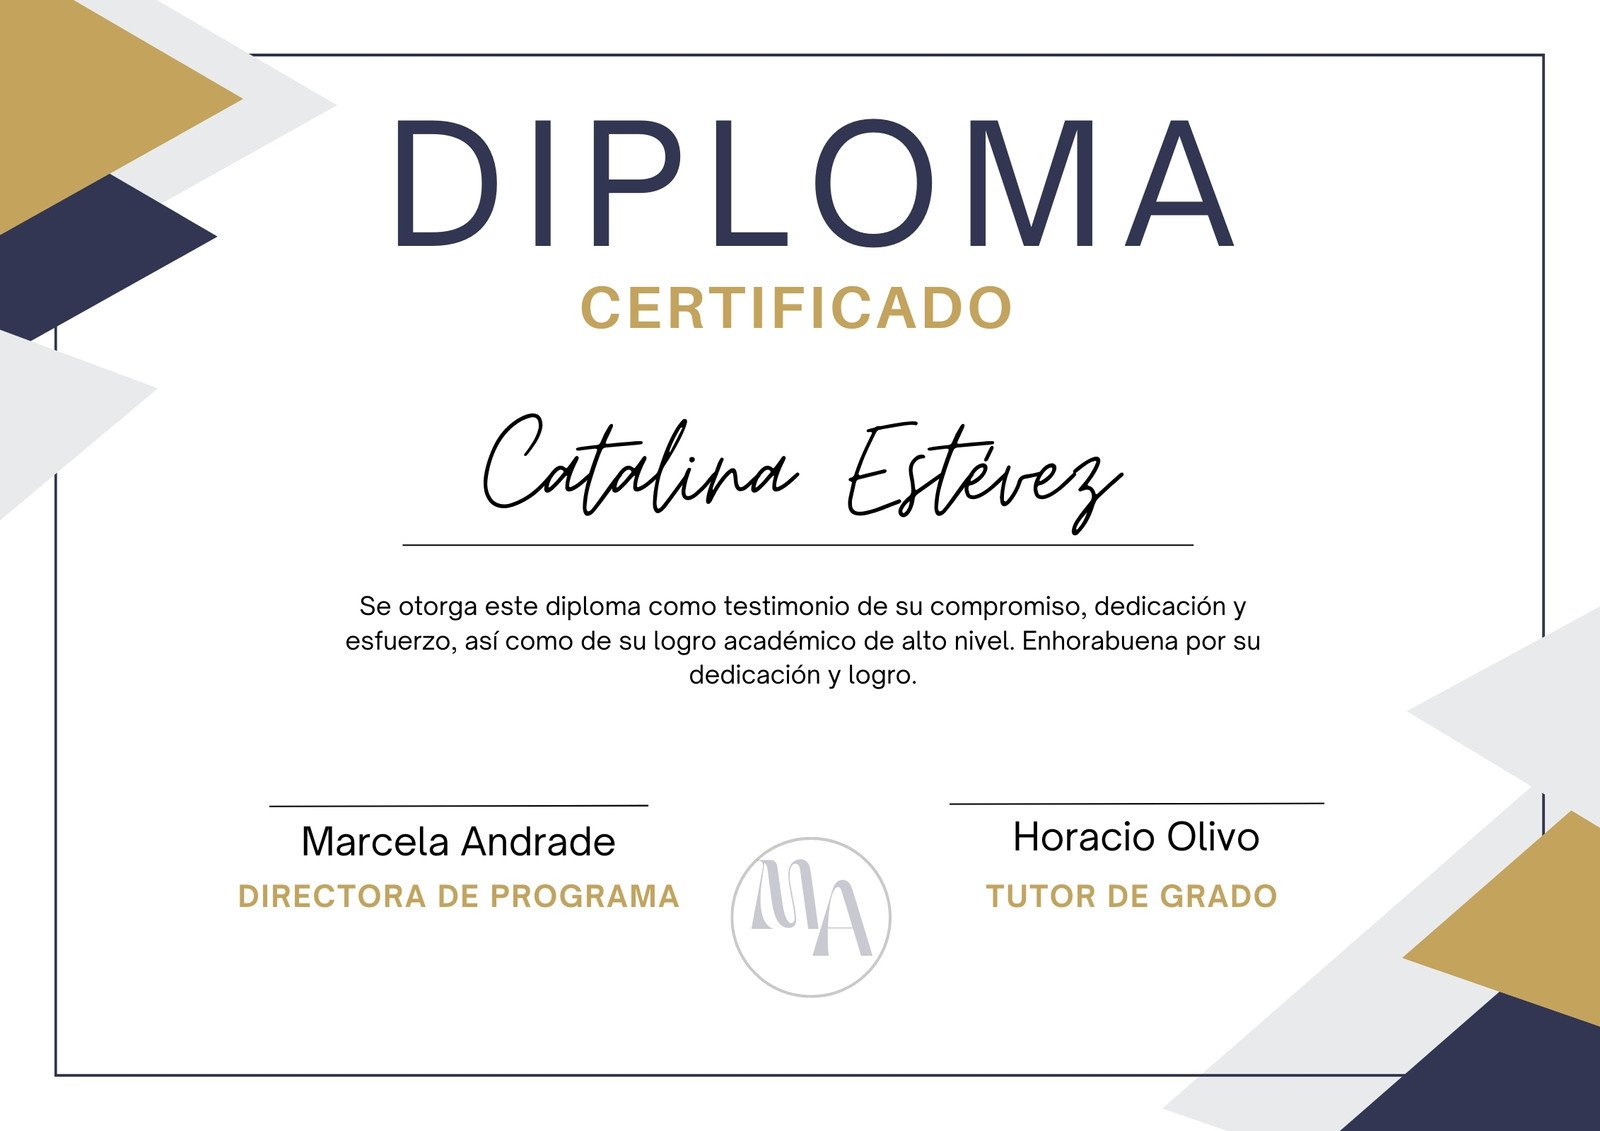 Diploma Certificado Original Curso Clase Oficial Corporativo Azul